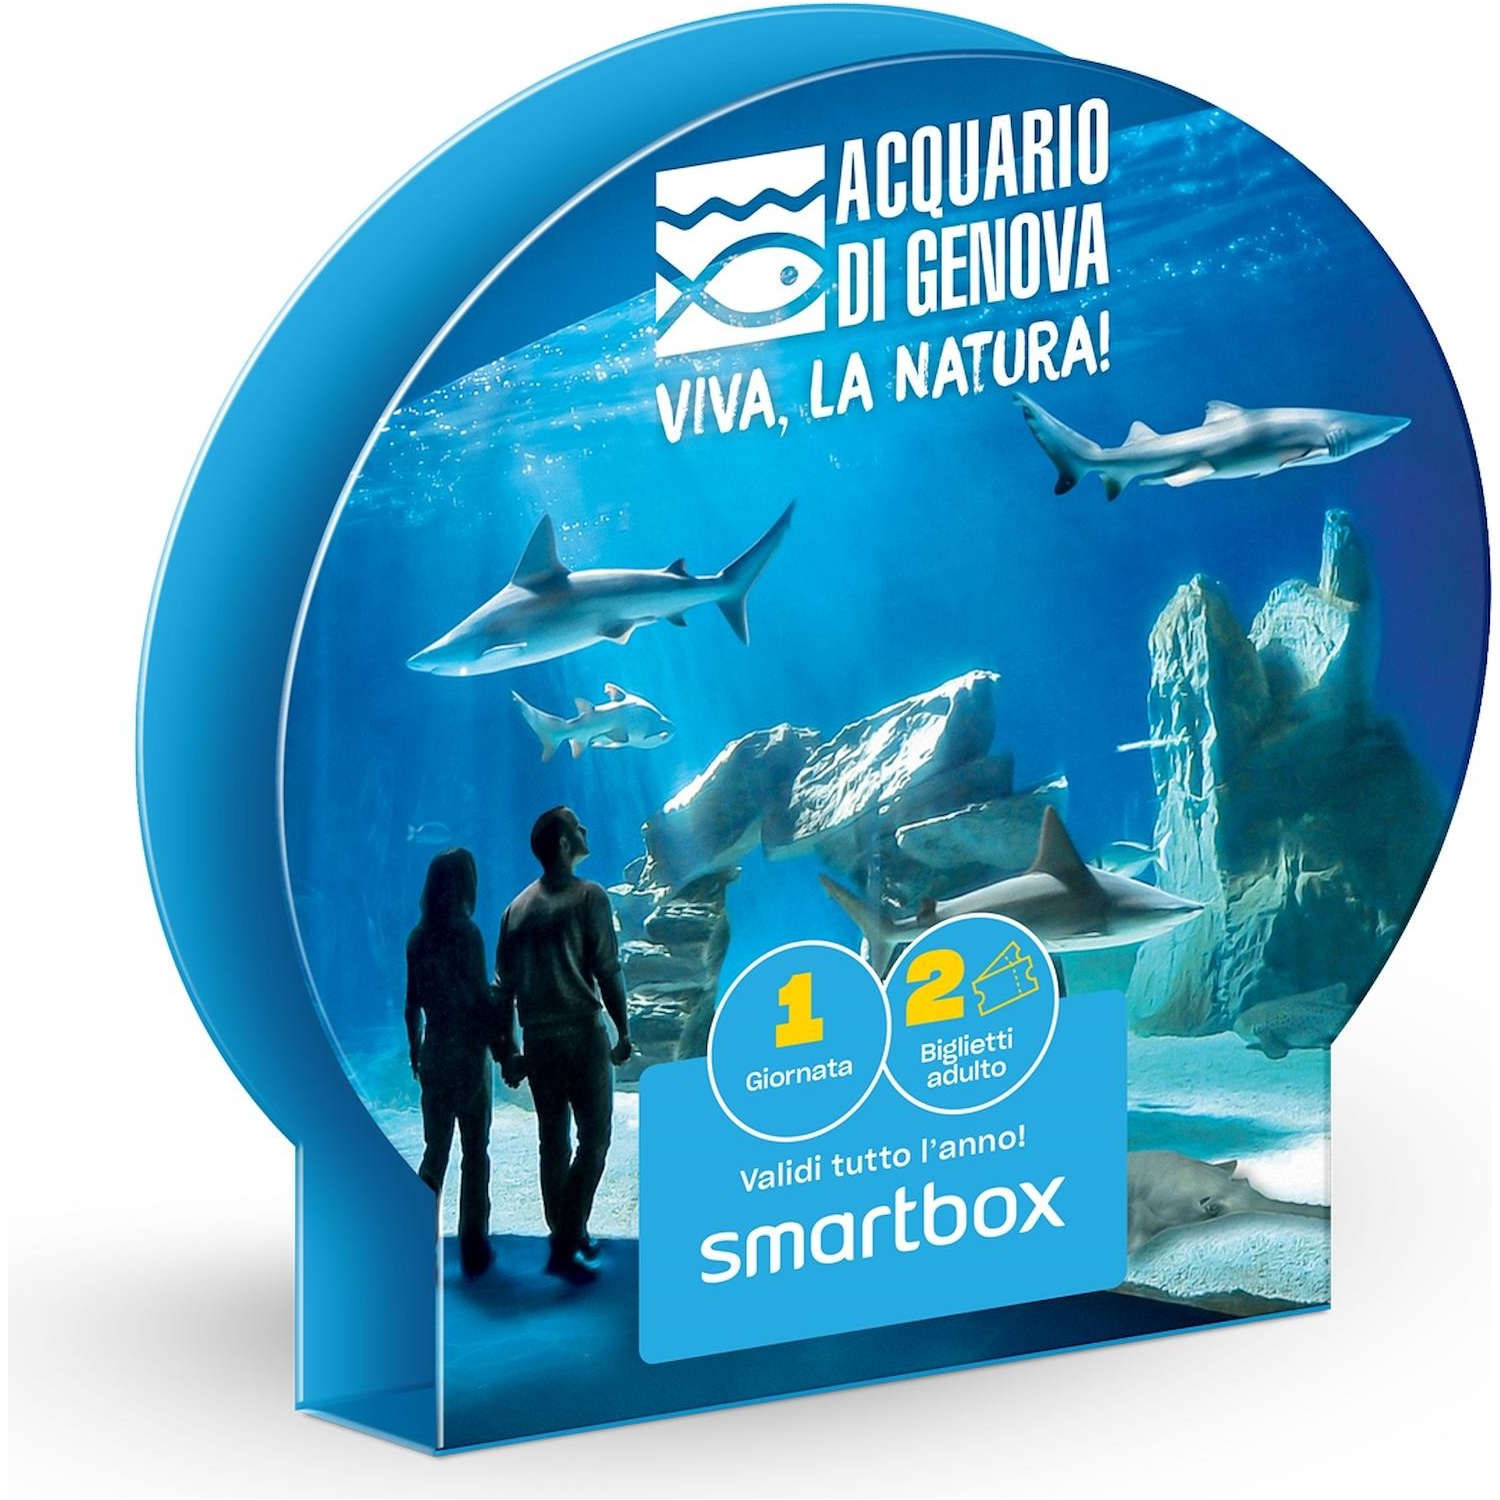 Immagine per Cofanetto Regalo Smartbox Acquario di Genova - 1 ingresso per 2 da DIMOStore